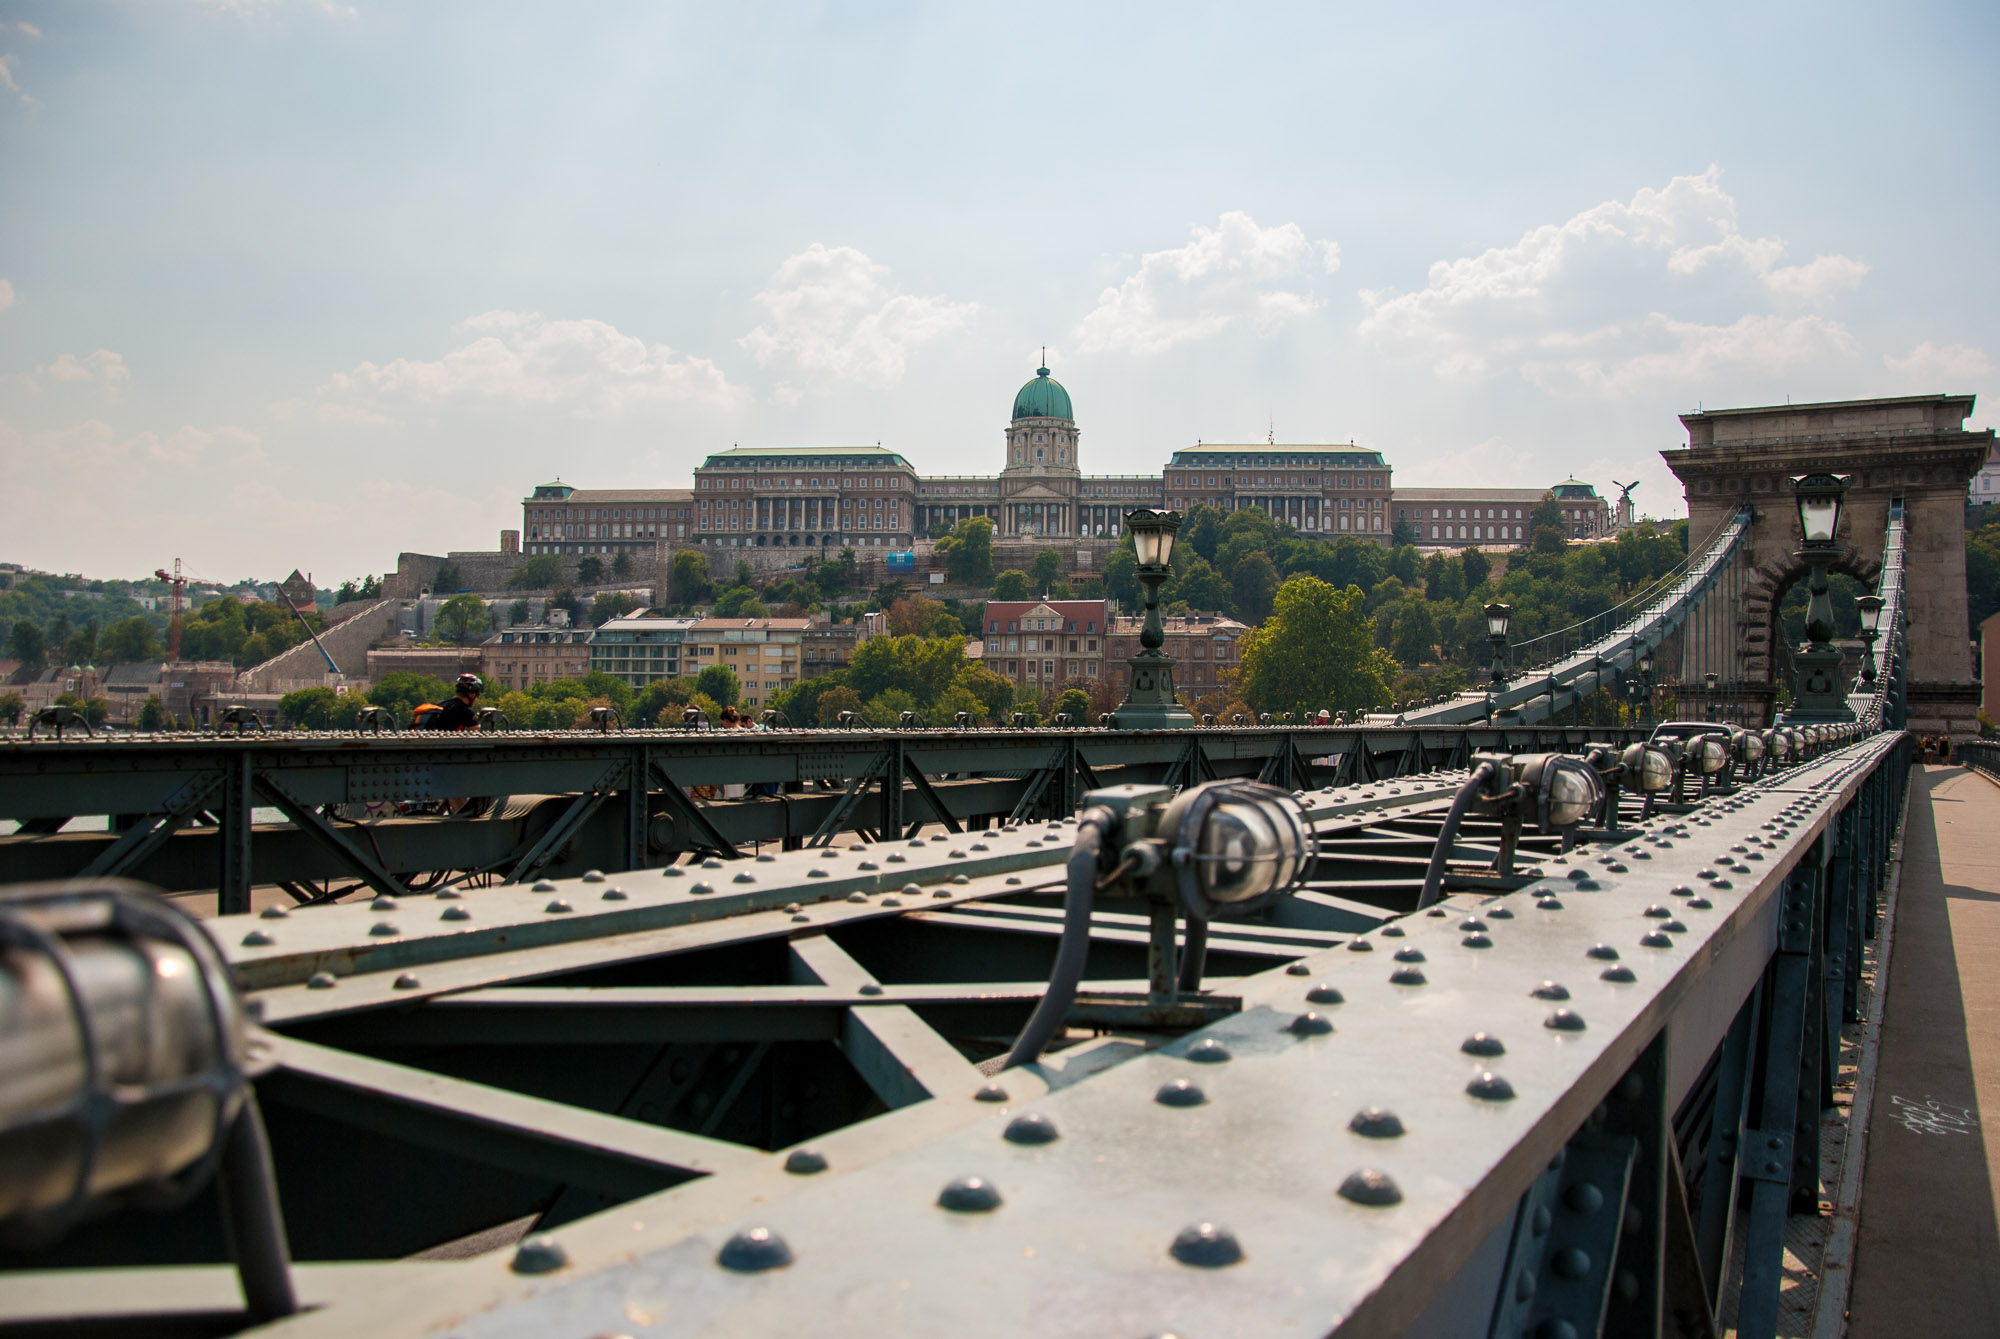 Budapest sight-seeing